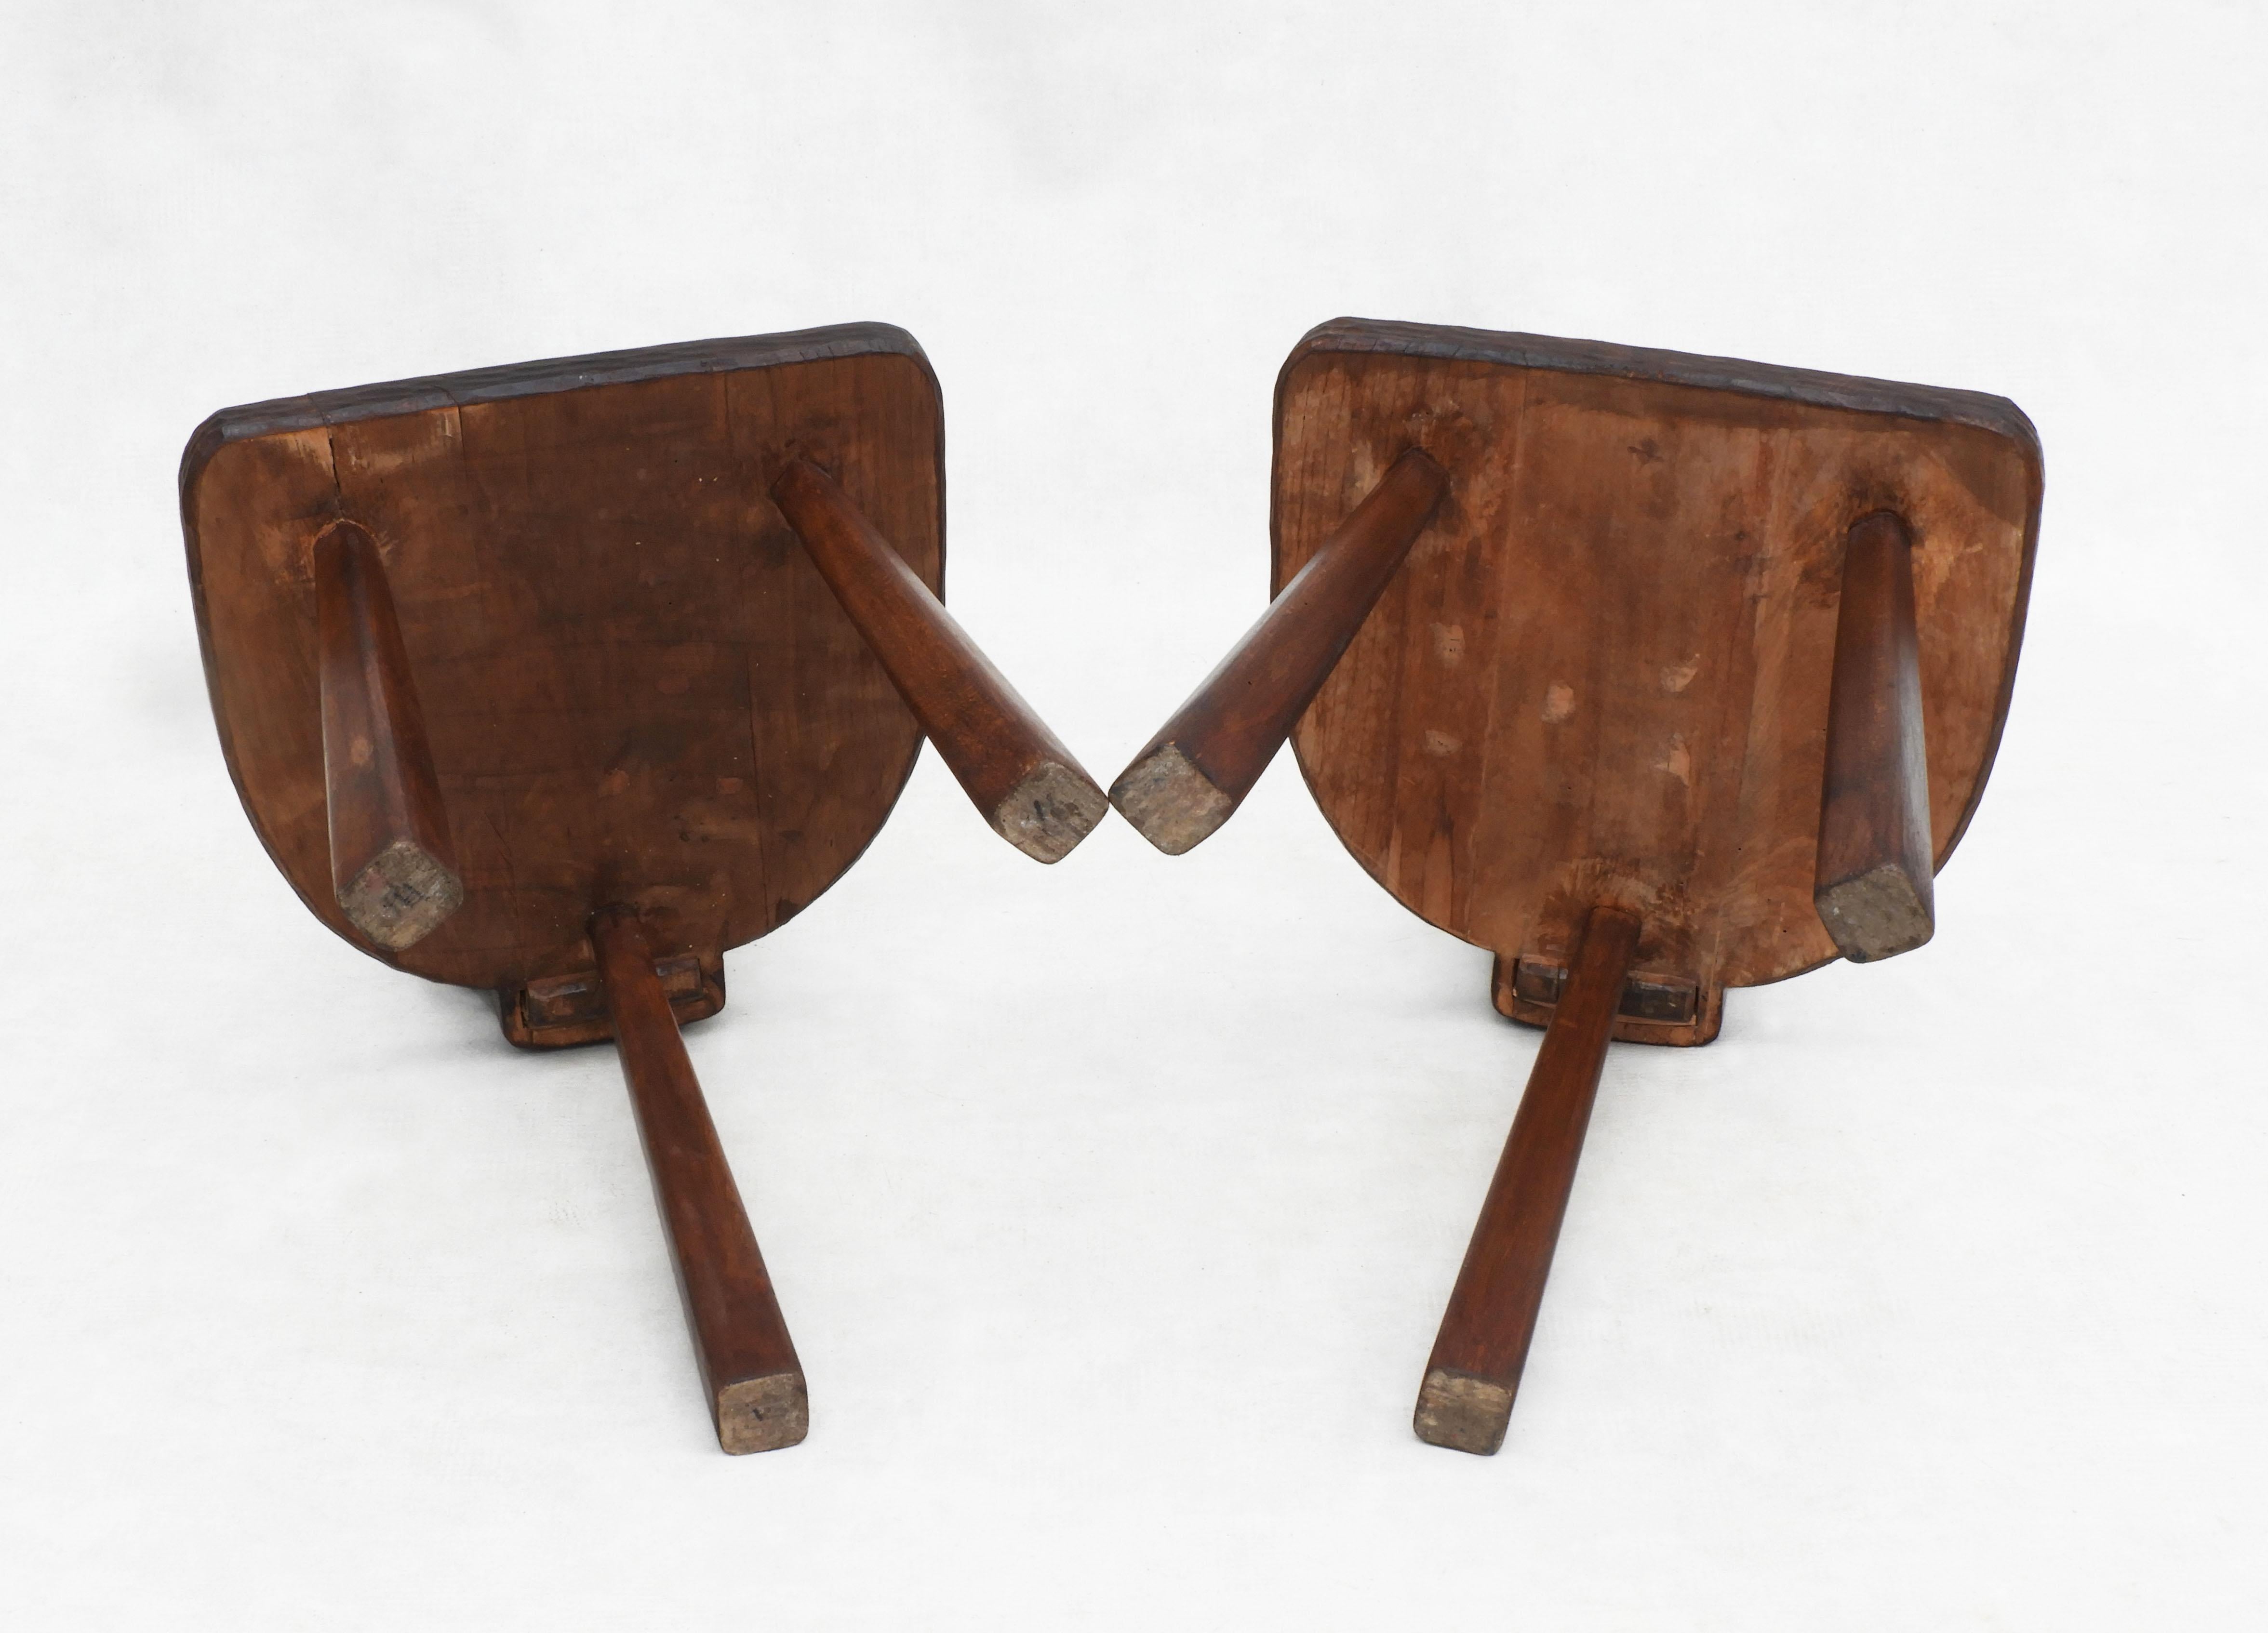 Pair of Basque Tripod Chairs 1950s European Folk Art For Sale 3